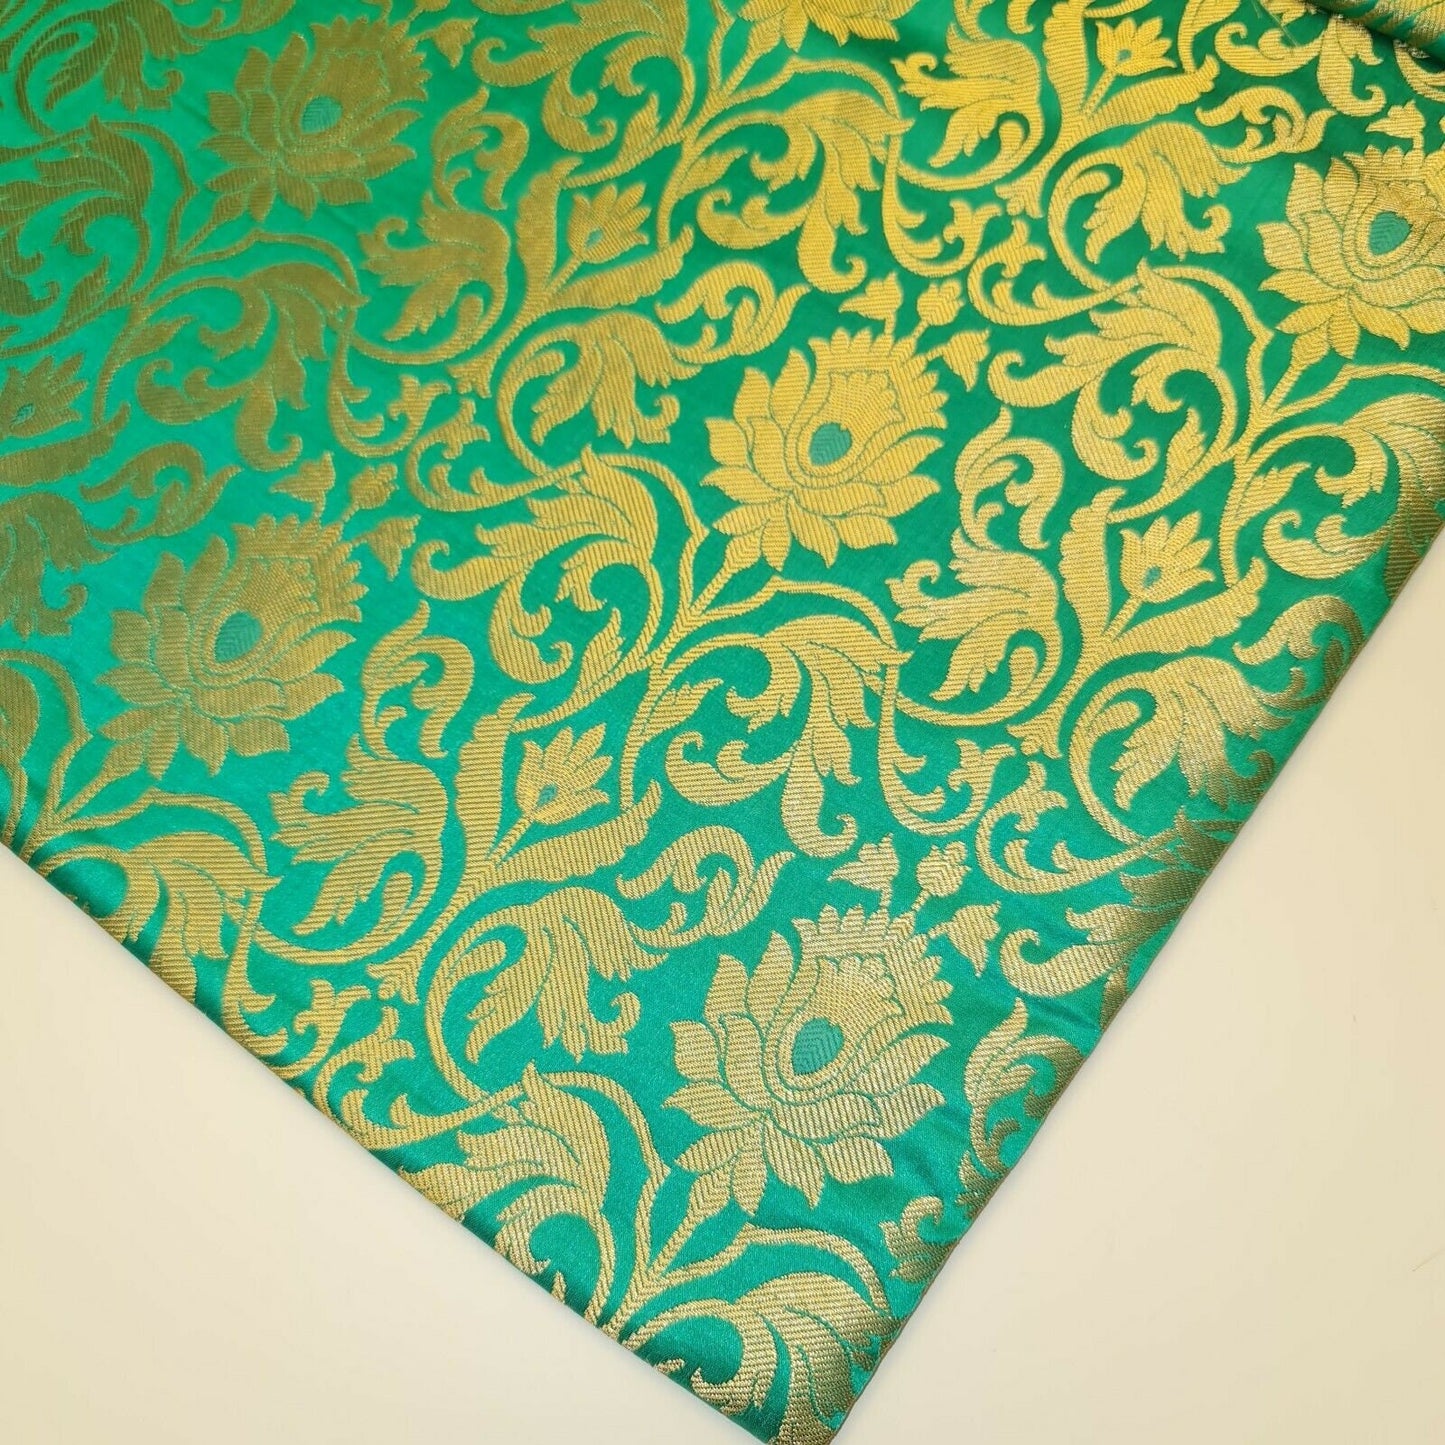 Luxurious Floral Gold Metallic Indian Banarasi Brocade Fabric 44" By The Meter (Jade)